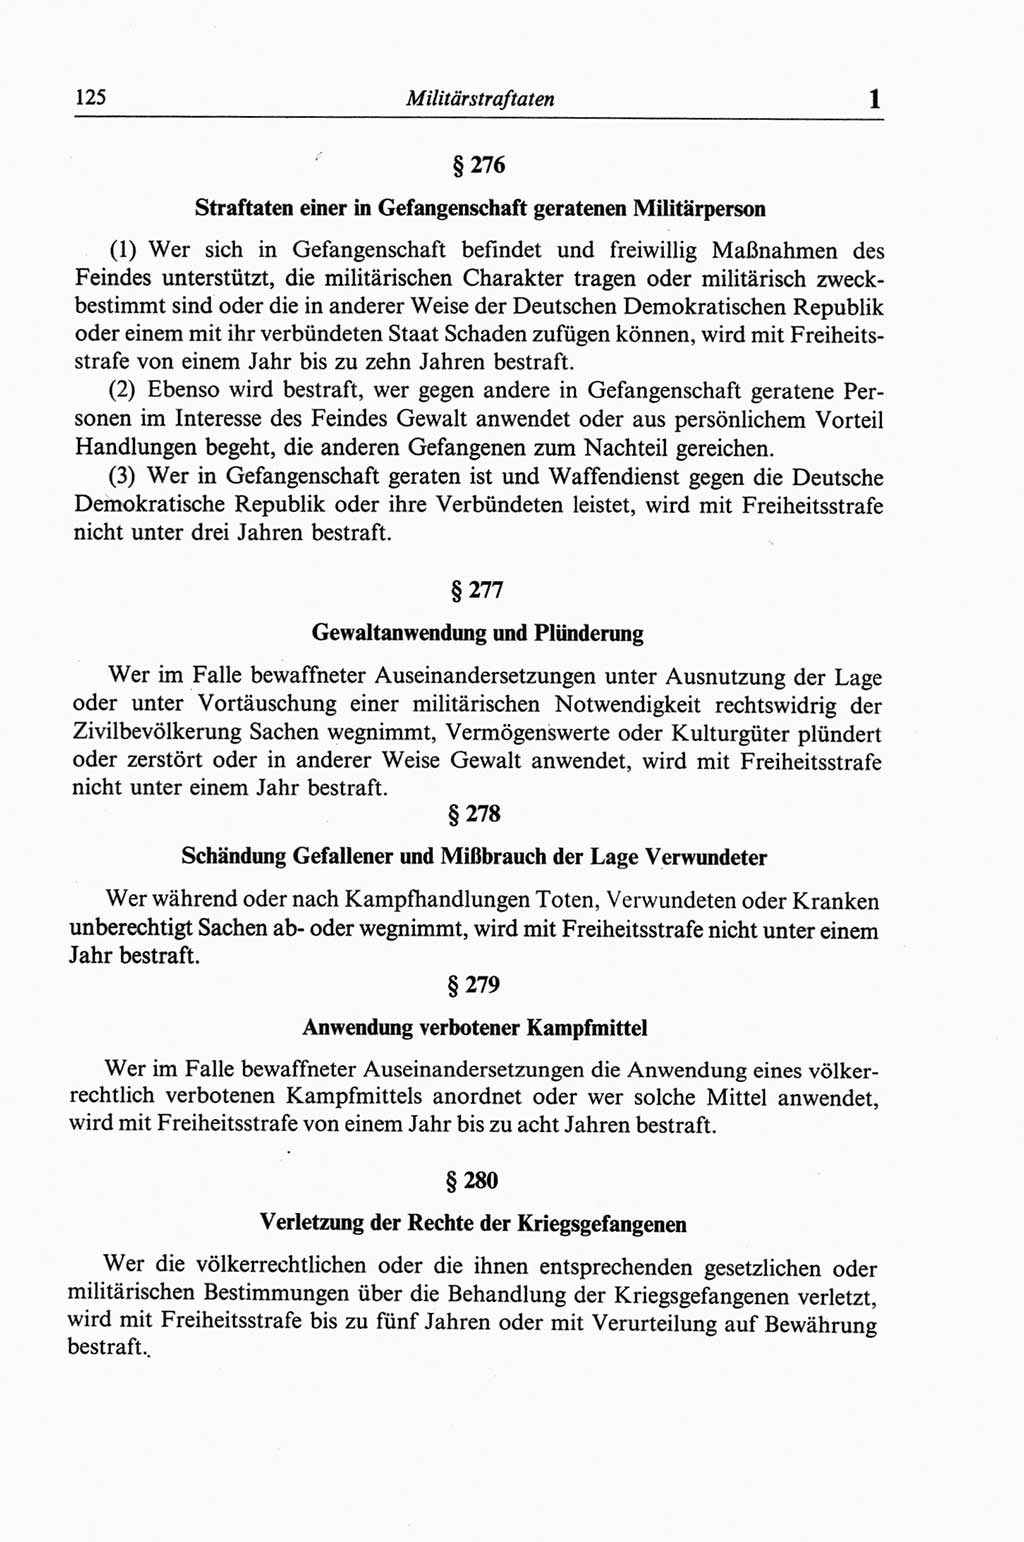 Strafgesetzbuch (StGB) der Deutschen Demokratischen Republik (DDR) und angrenzende Gesetze und Bestimmungen 1968, Seite 125 (StGB Ges. Best. DDR 1968, S. 125)